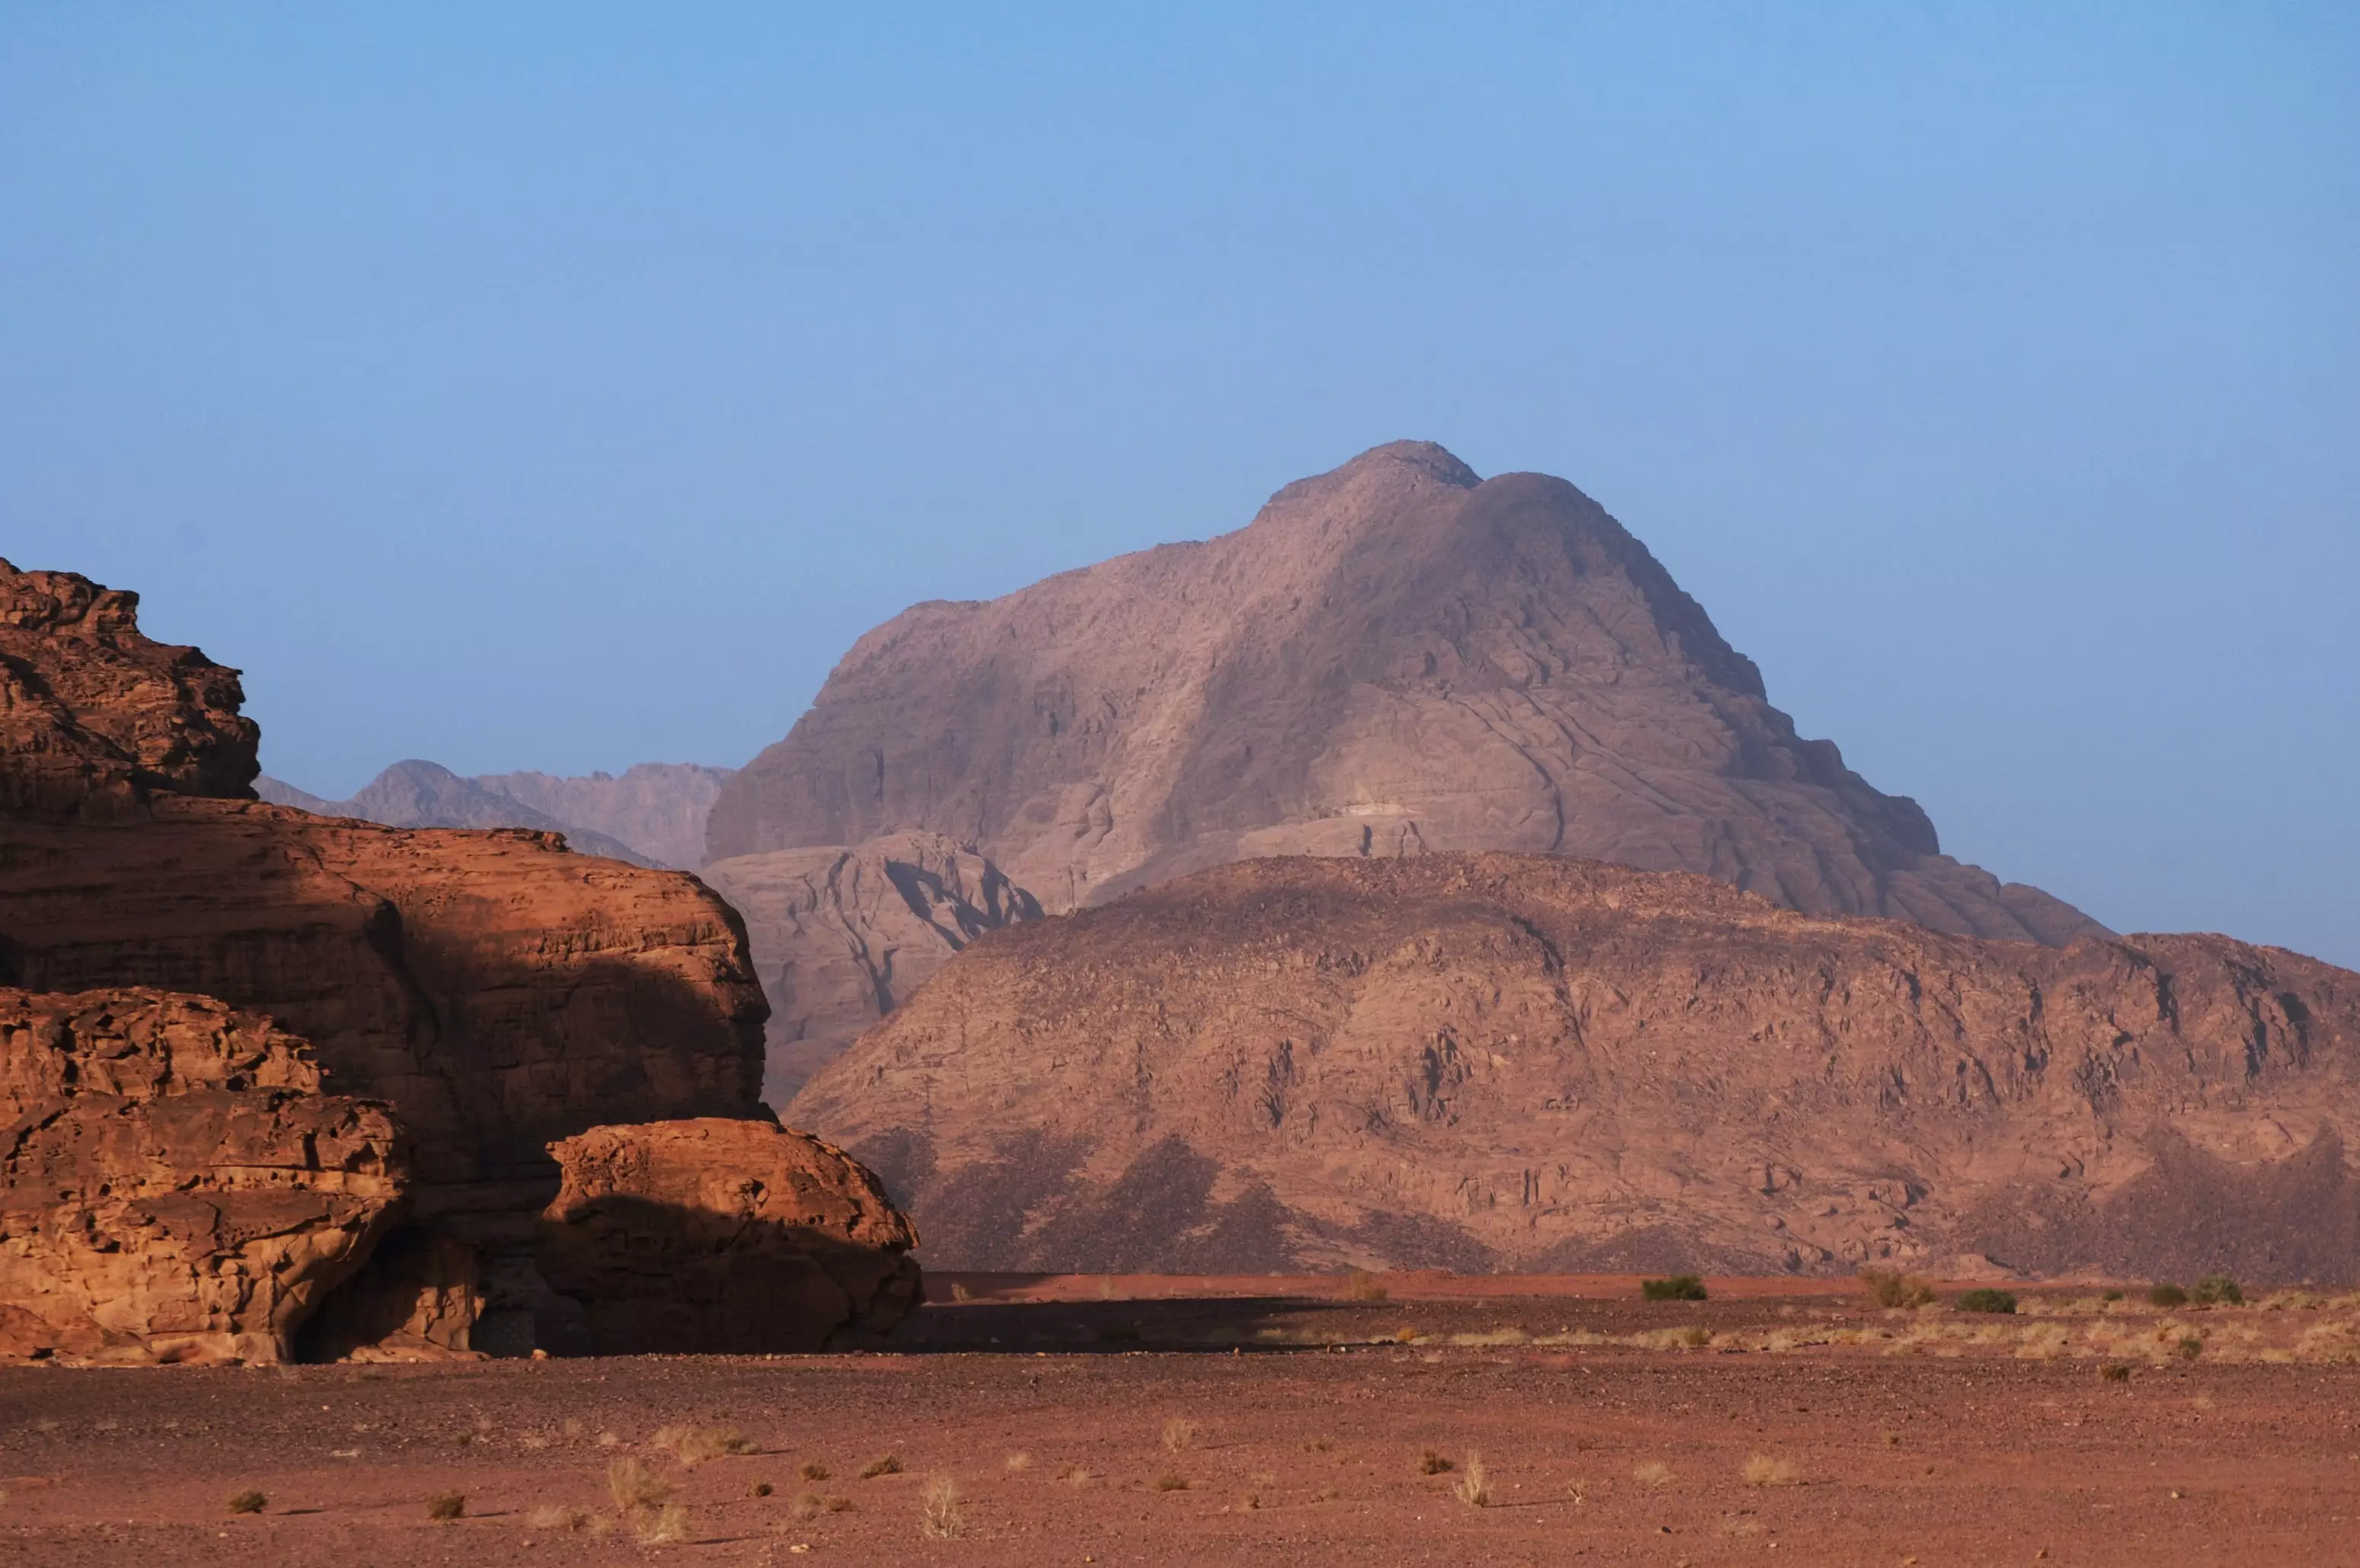 Wadi Rum in Jordan. (